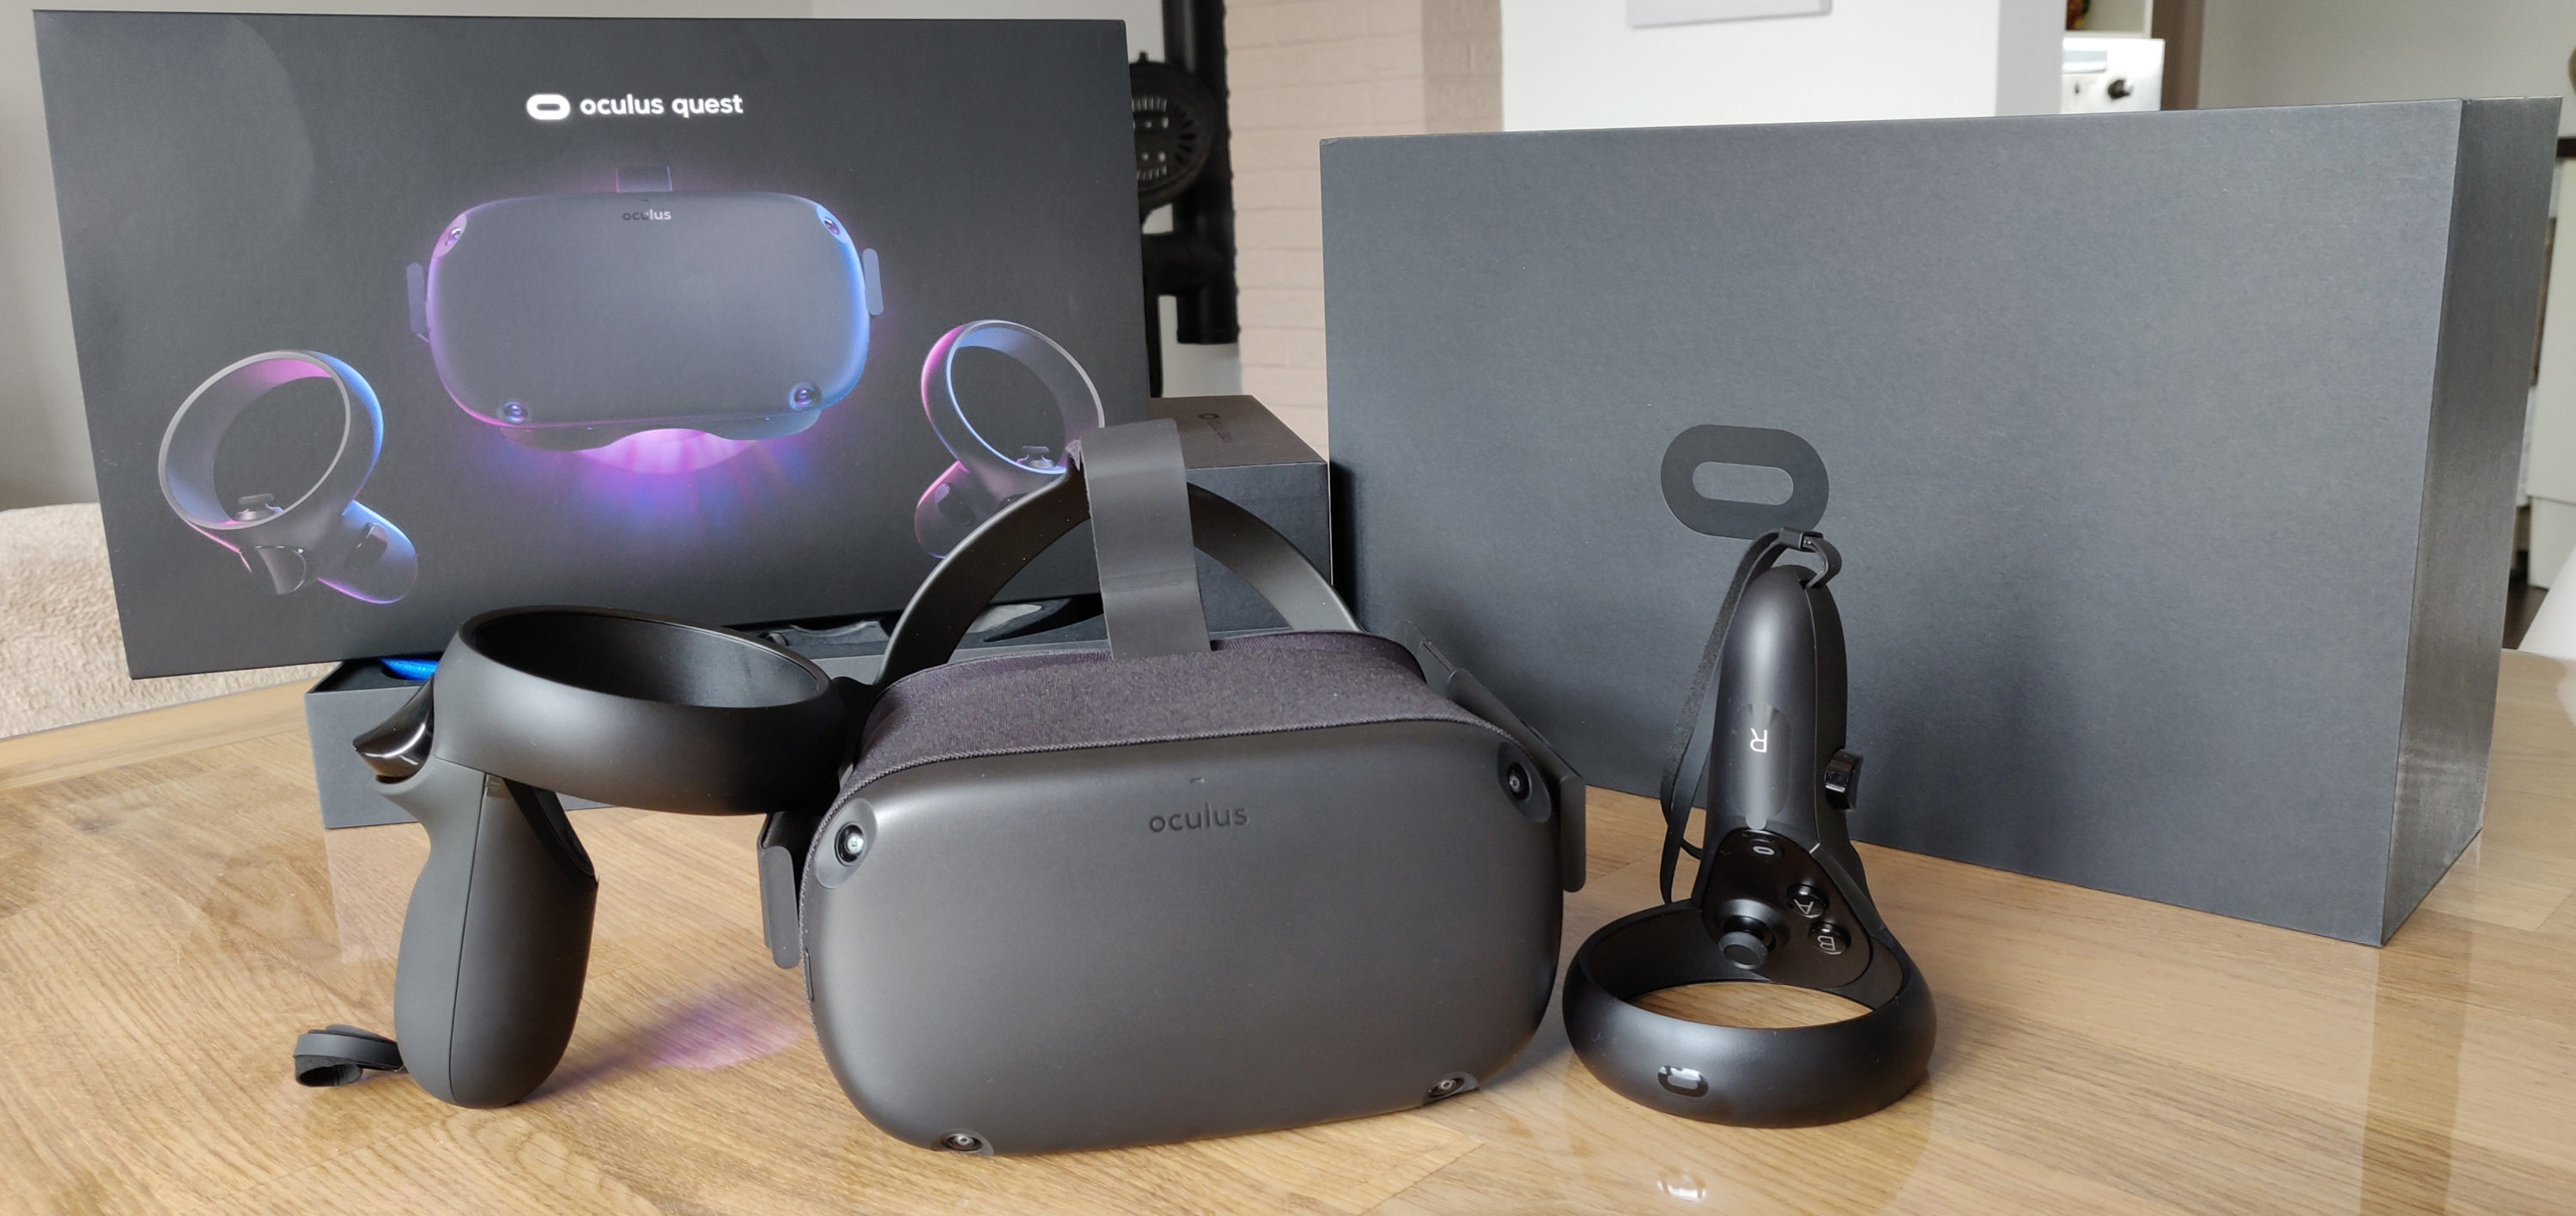 Oculus meta quest vr. VR Oculus 2. Шлем виртуальной реальности Oculus Quest 2 128 GB. VR Окулус квест 2. VR очки Oculus Quest.